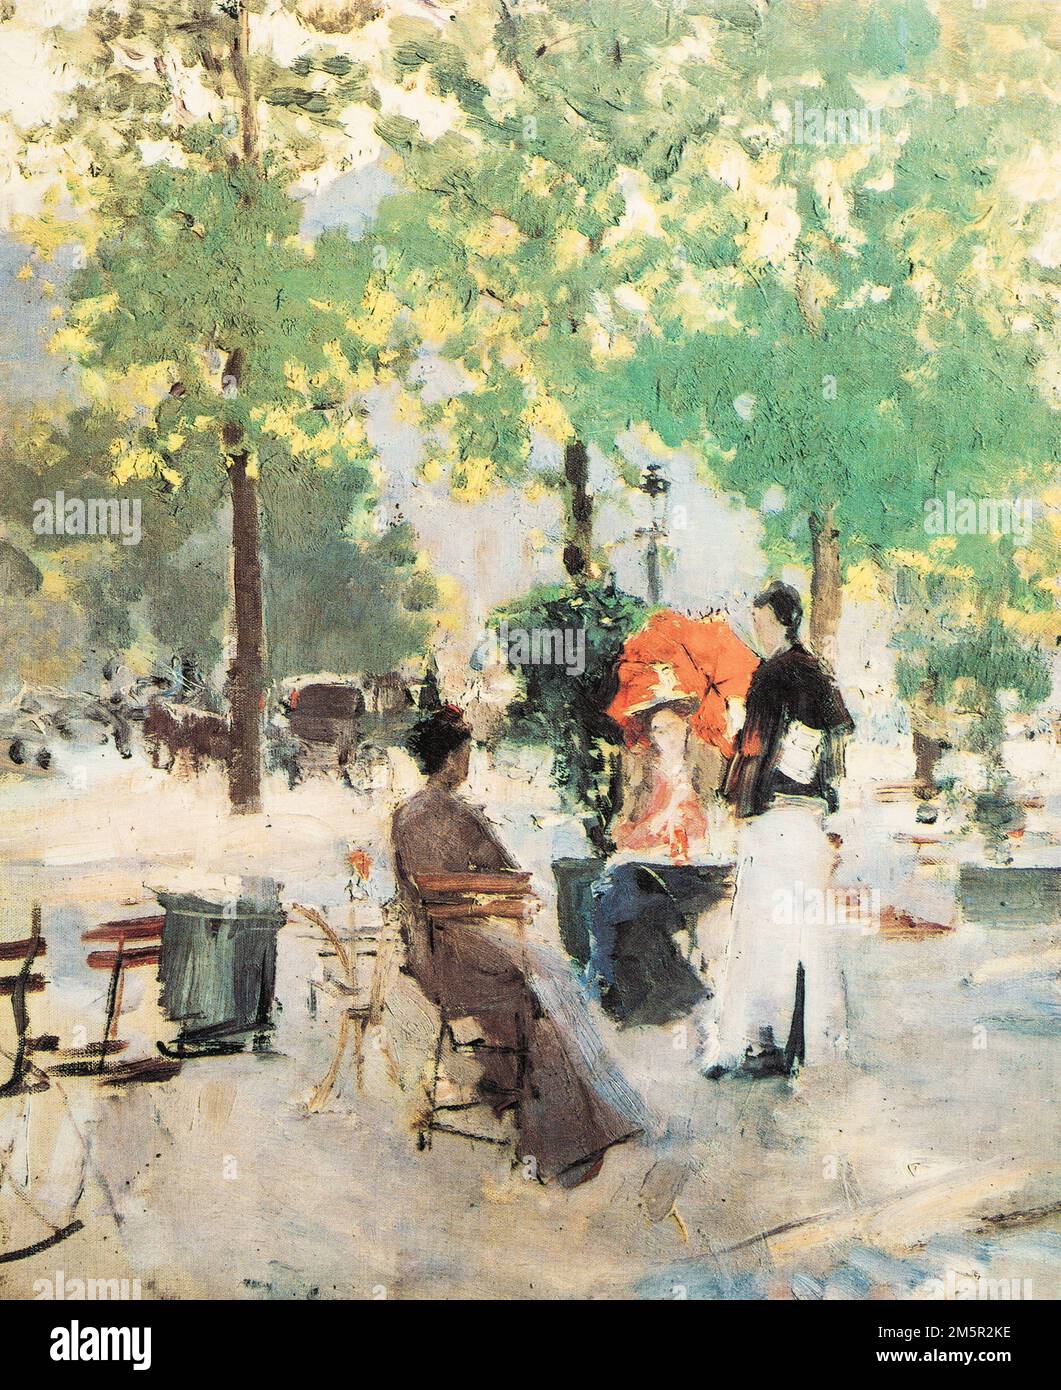 Dipinto dell'artista russo Konstantin Korovin, caffè parigino. Korovin era il principale pittore impressionista russo. Foto Stock